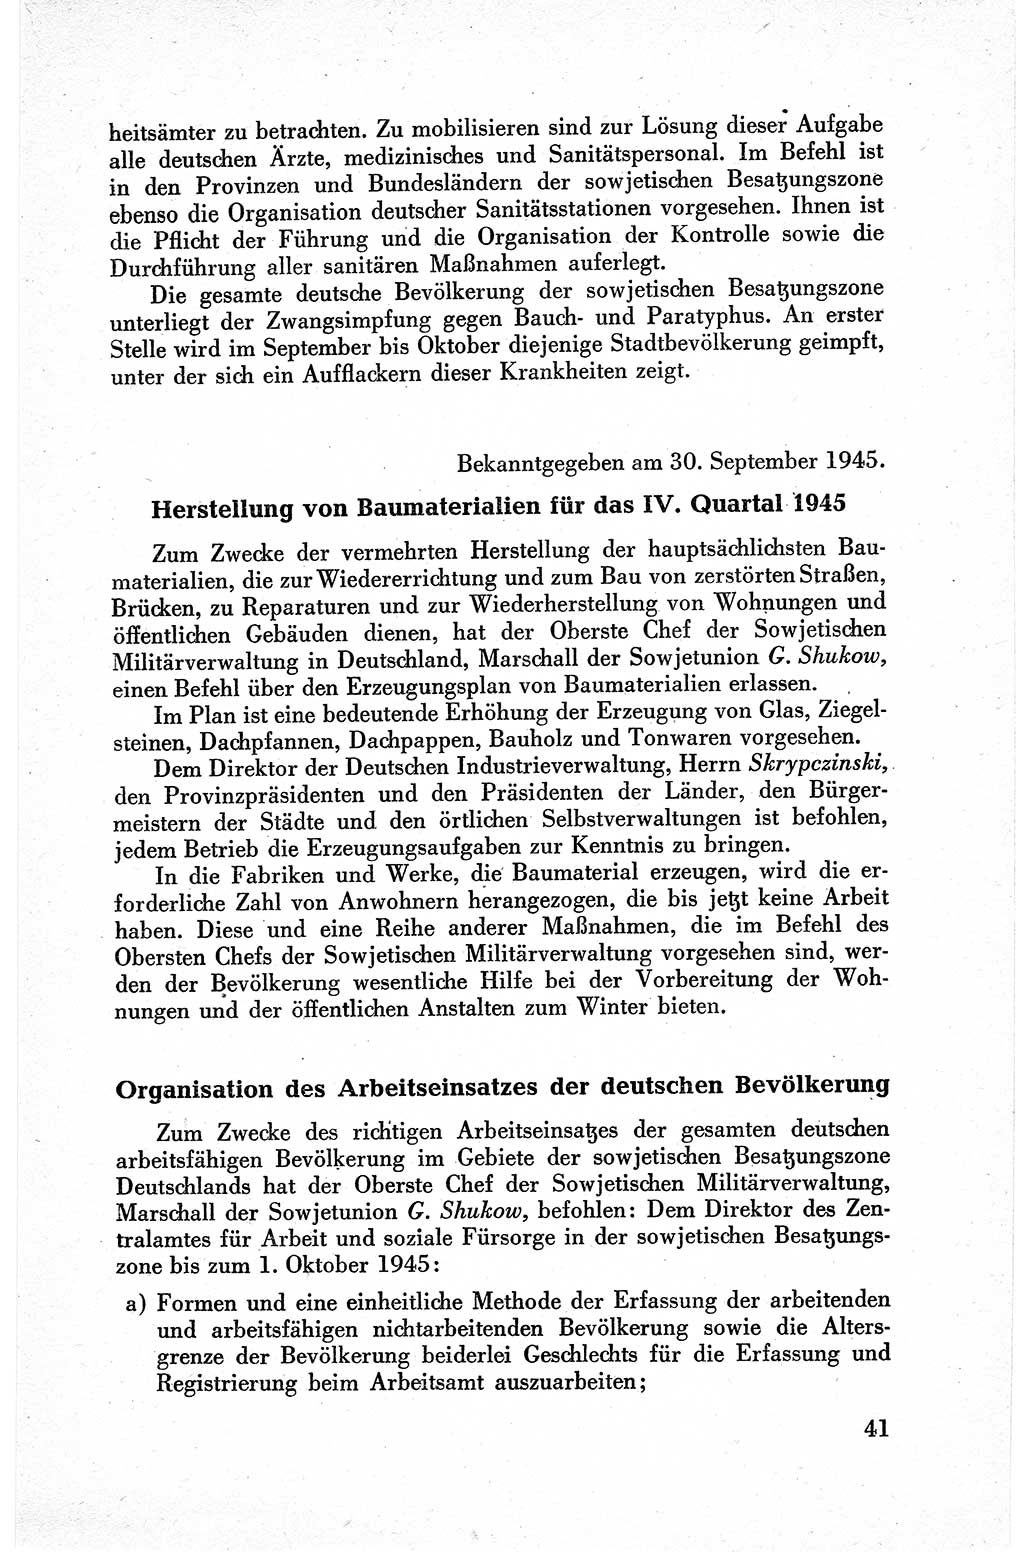 Befehle des Obersten Chefs der Sowjetischen Miltärverwaltung (SMV) in Deutschland - Aus dem Stab der Sowjetischen Militärverwaltung in Deutschland 1945, Seite 41 (Bef. SMV Dtl. 1945, S. 41)